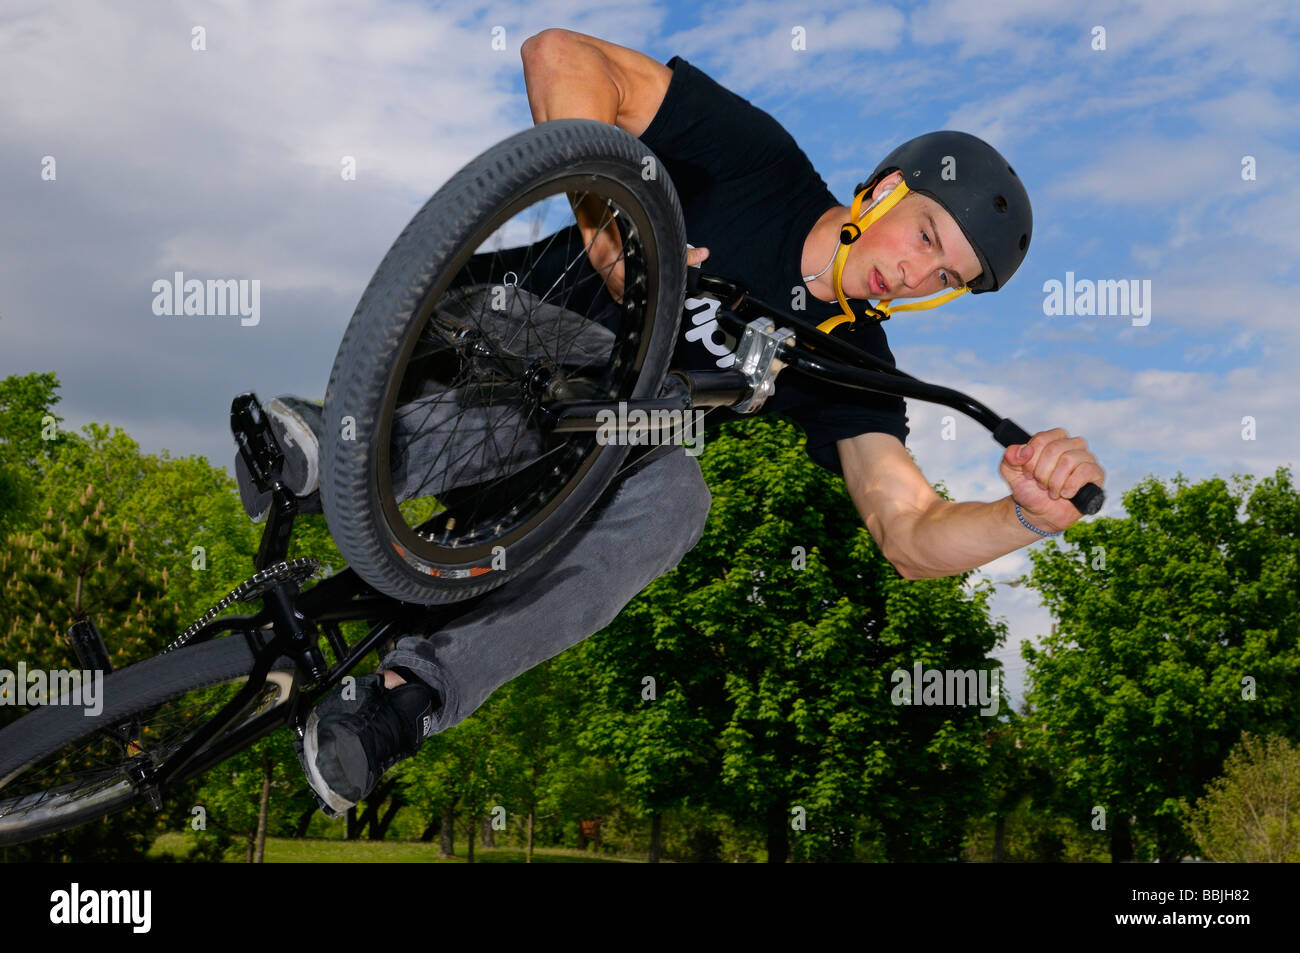 Airborne bmx bike Reiter in einer Luft, die Tischplatte in der Freien Stadt skatepark Toronto Stockfoto